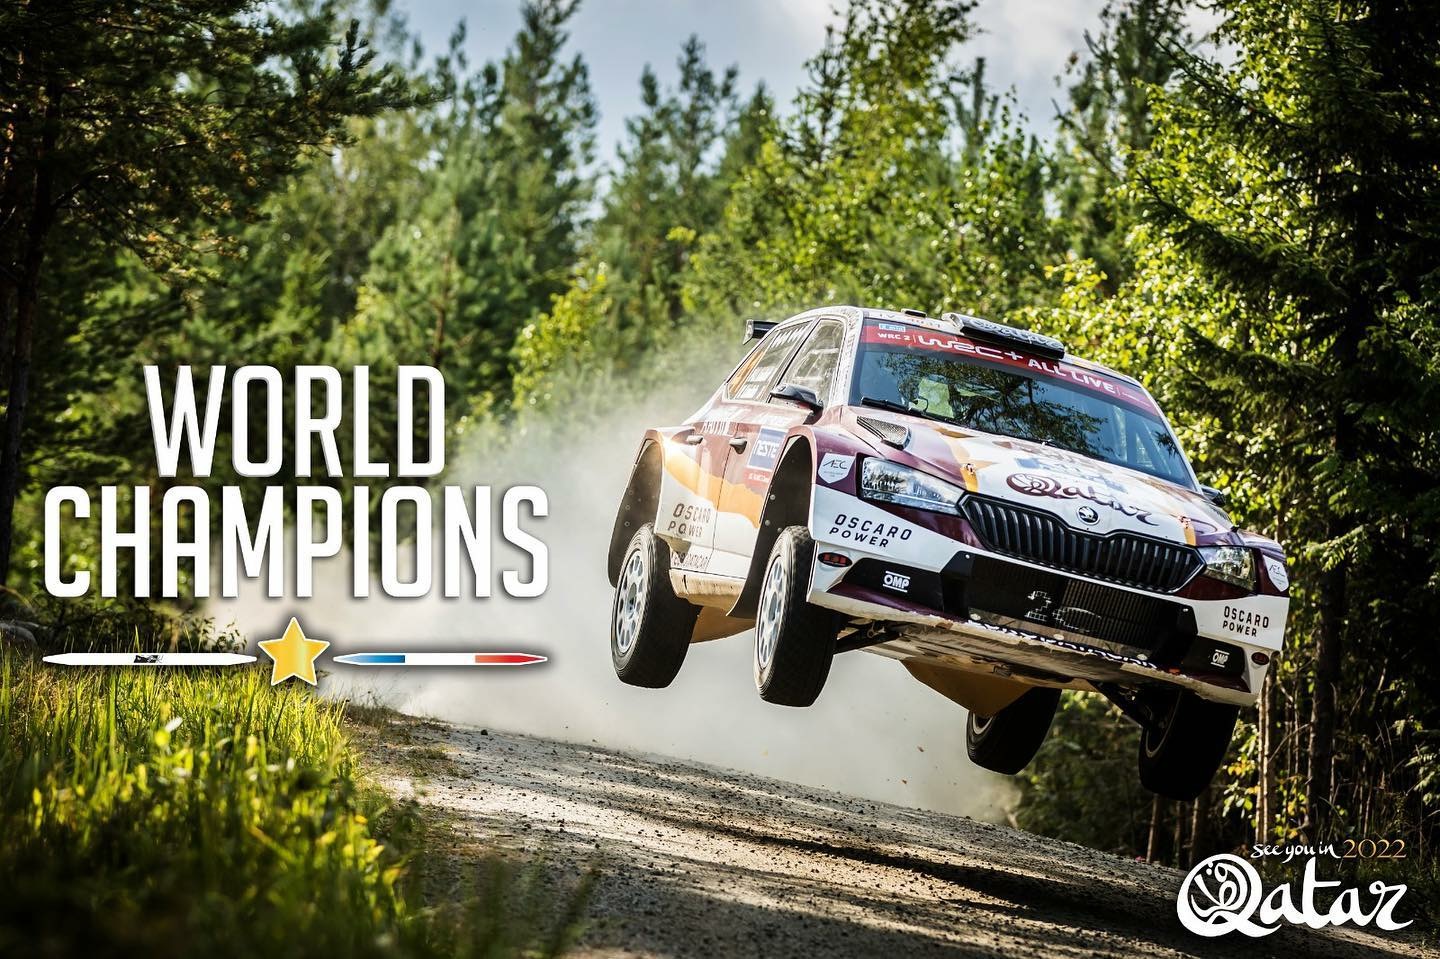 Pierre-Louis Loubet sacré champion du monde WRC2 après l'annulation du Rallye d'Australie